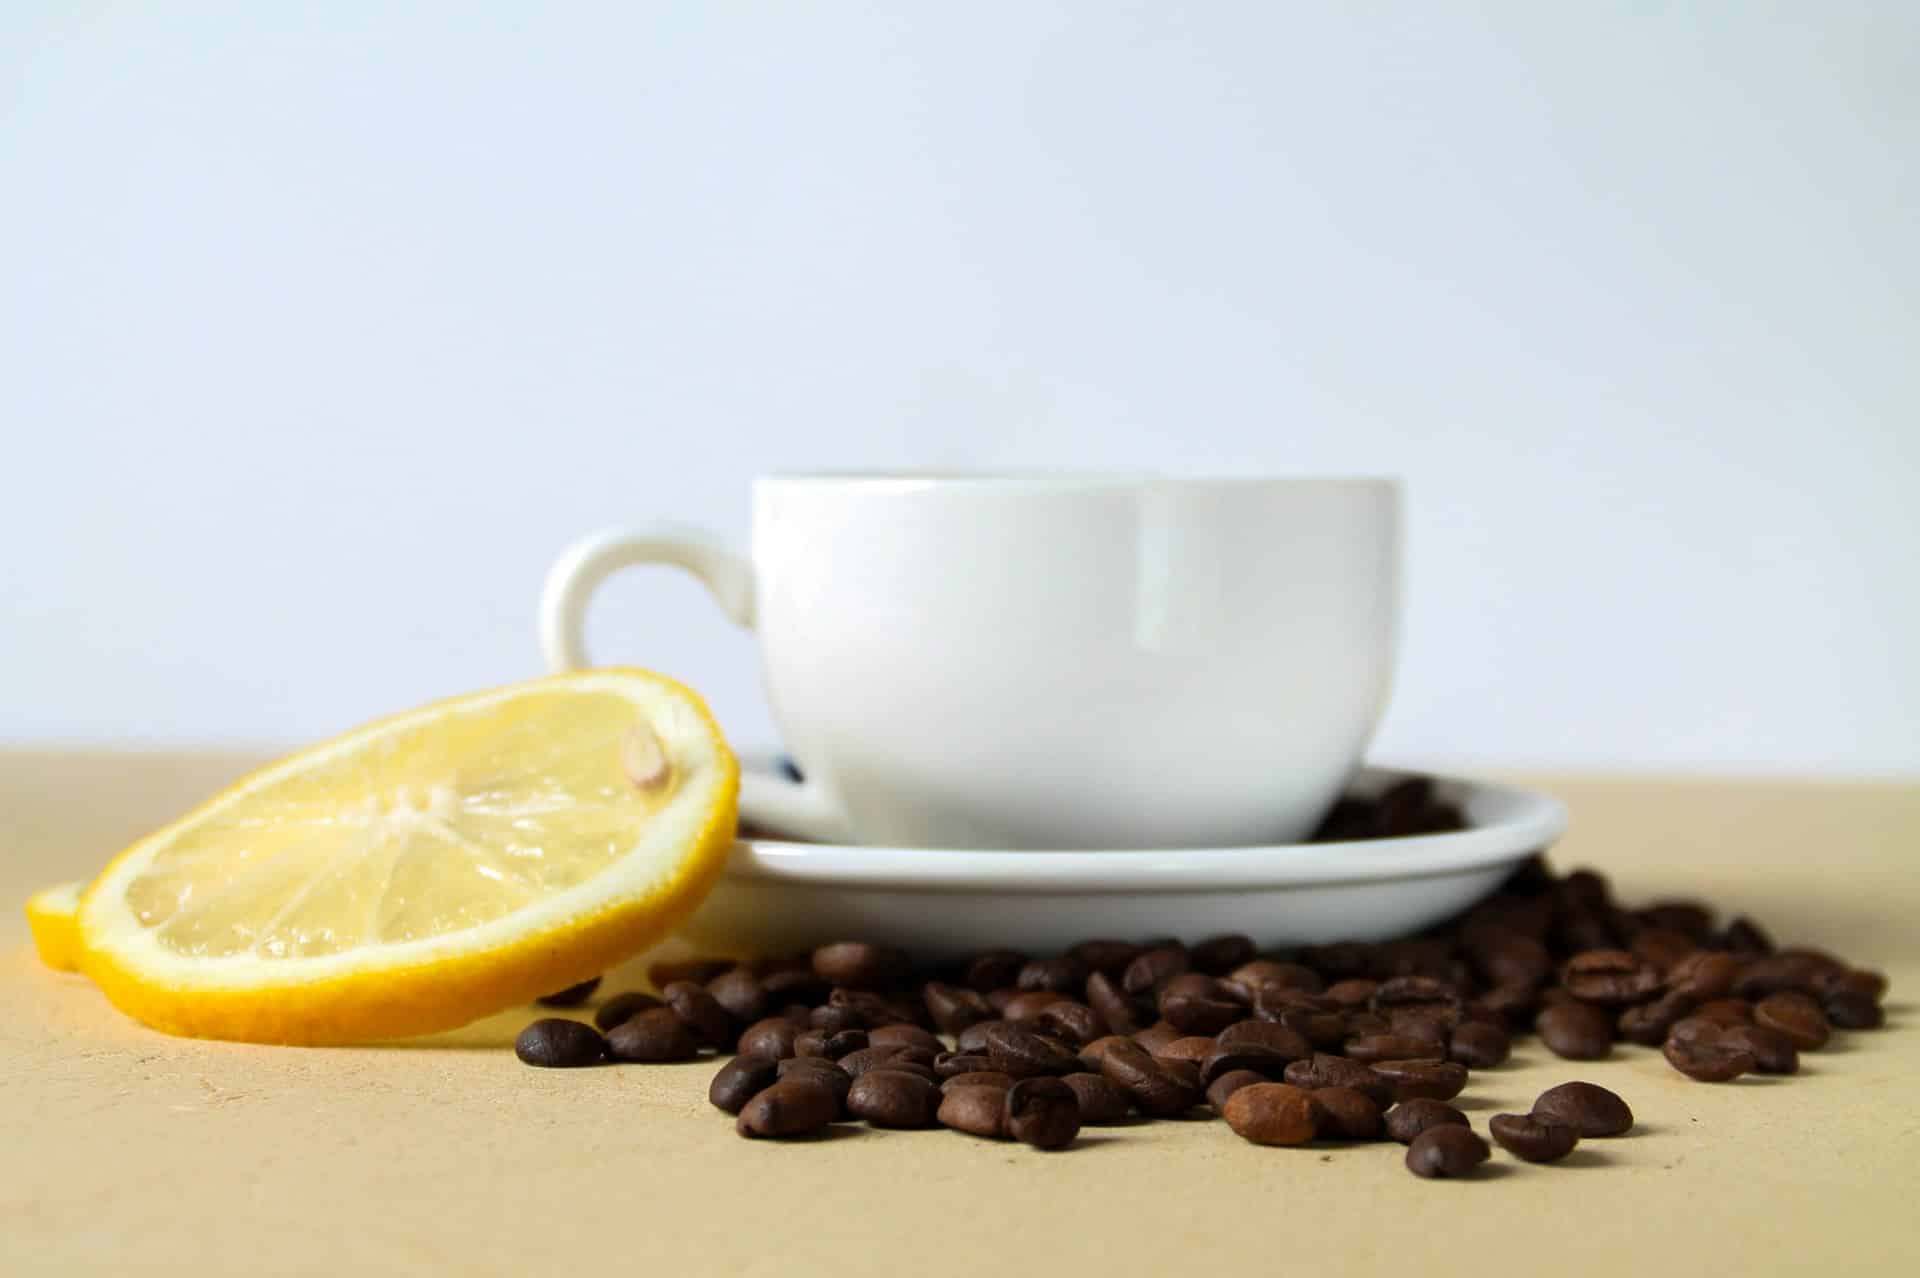 Kaffee mit Zitrone: Wirkung - Das steckt hinter dem Trend